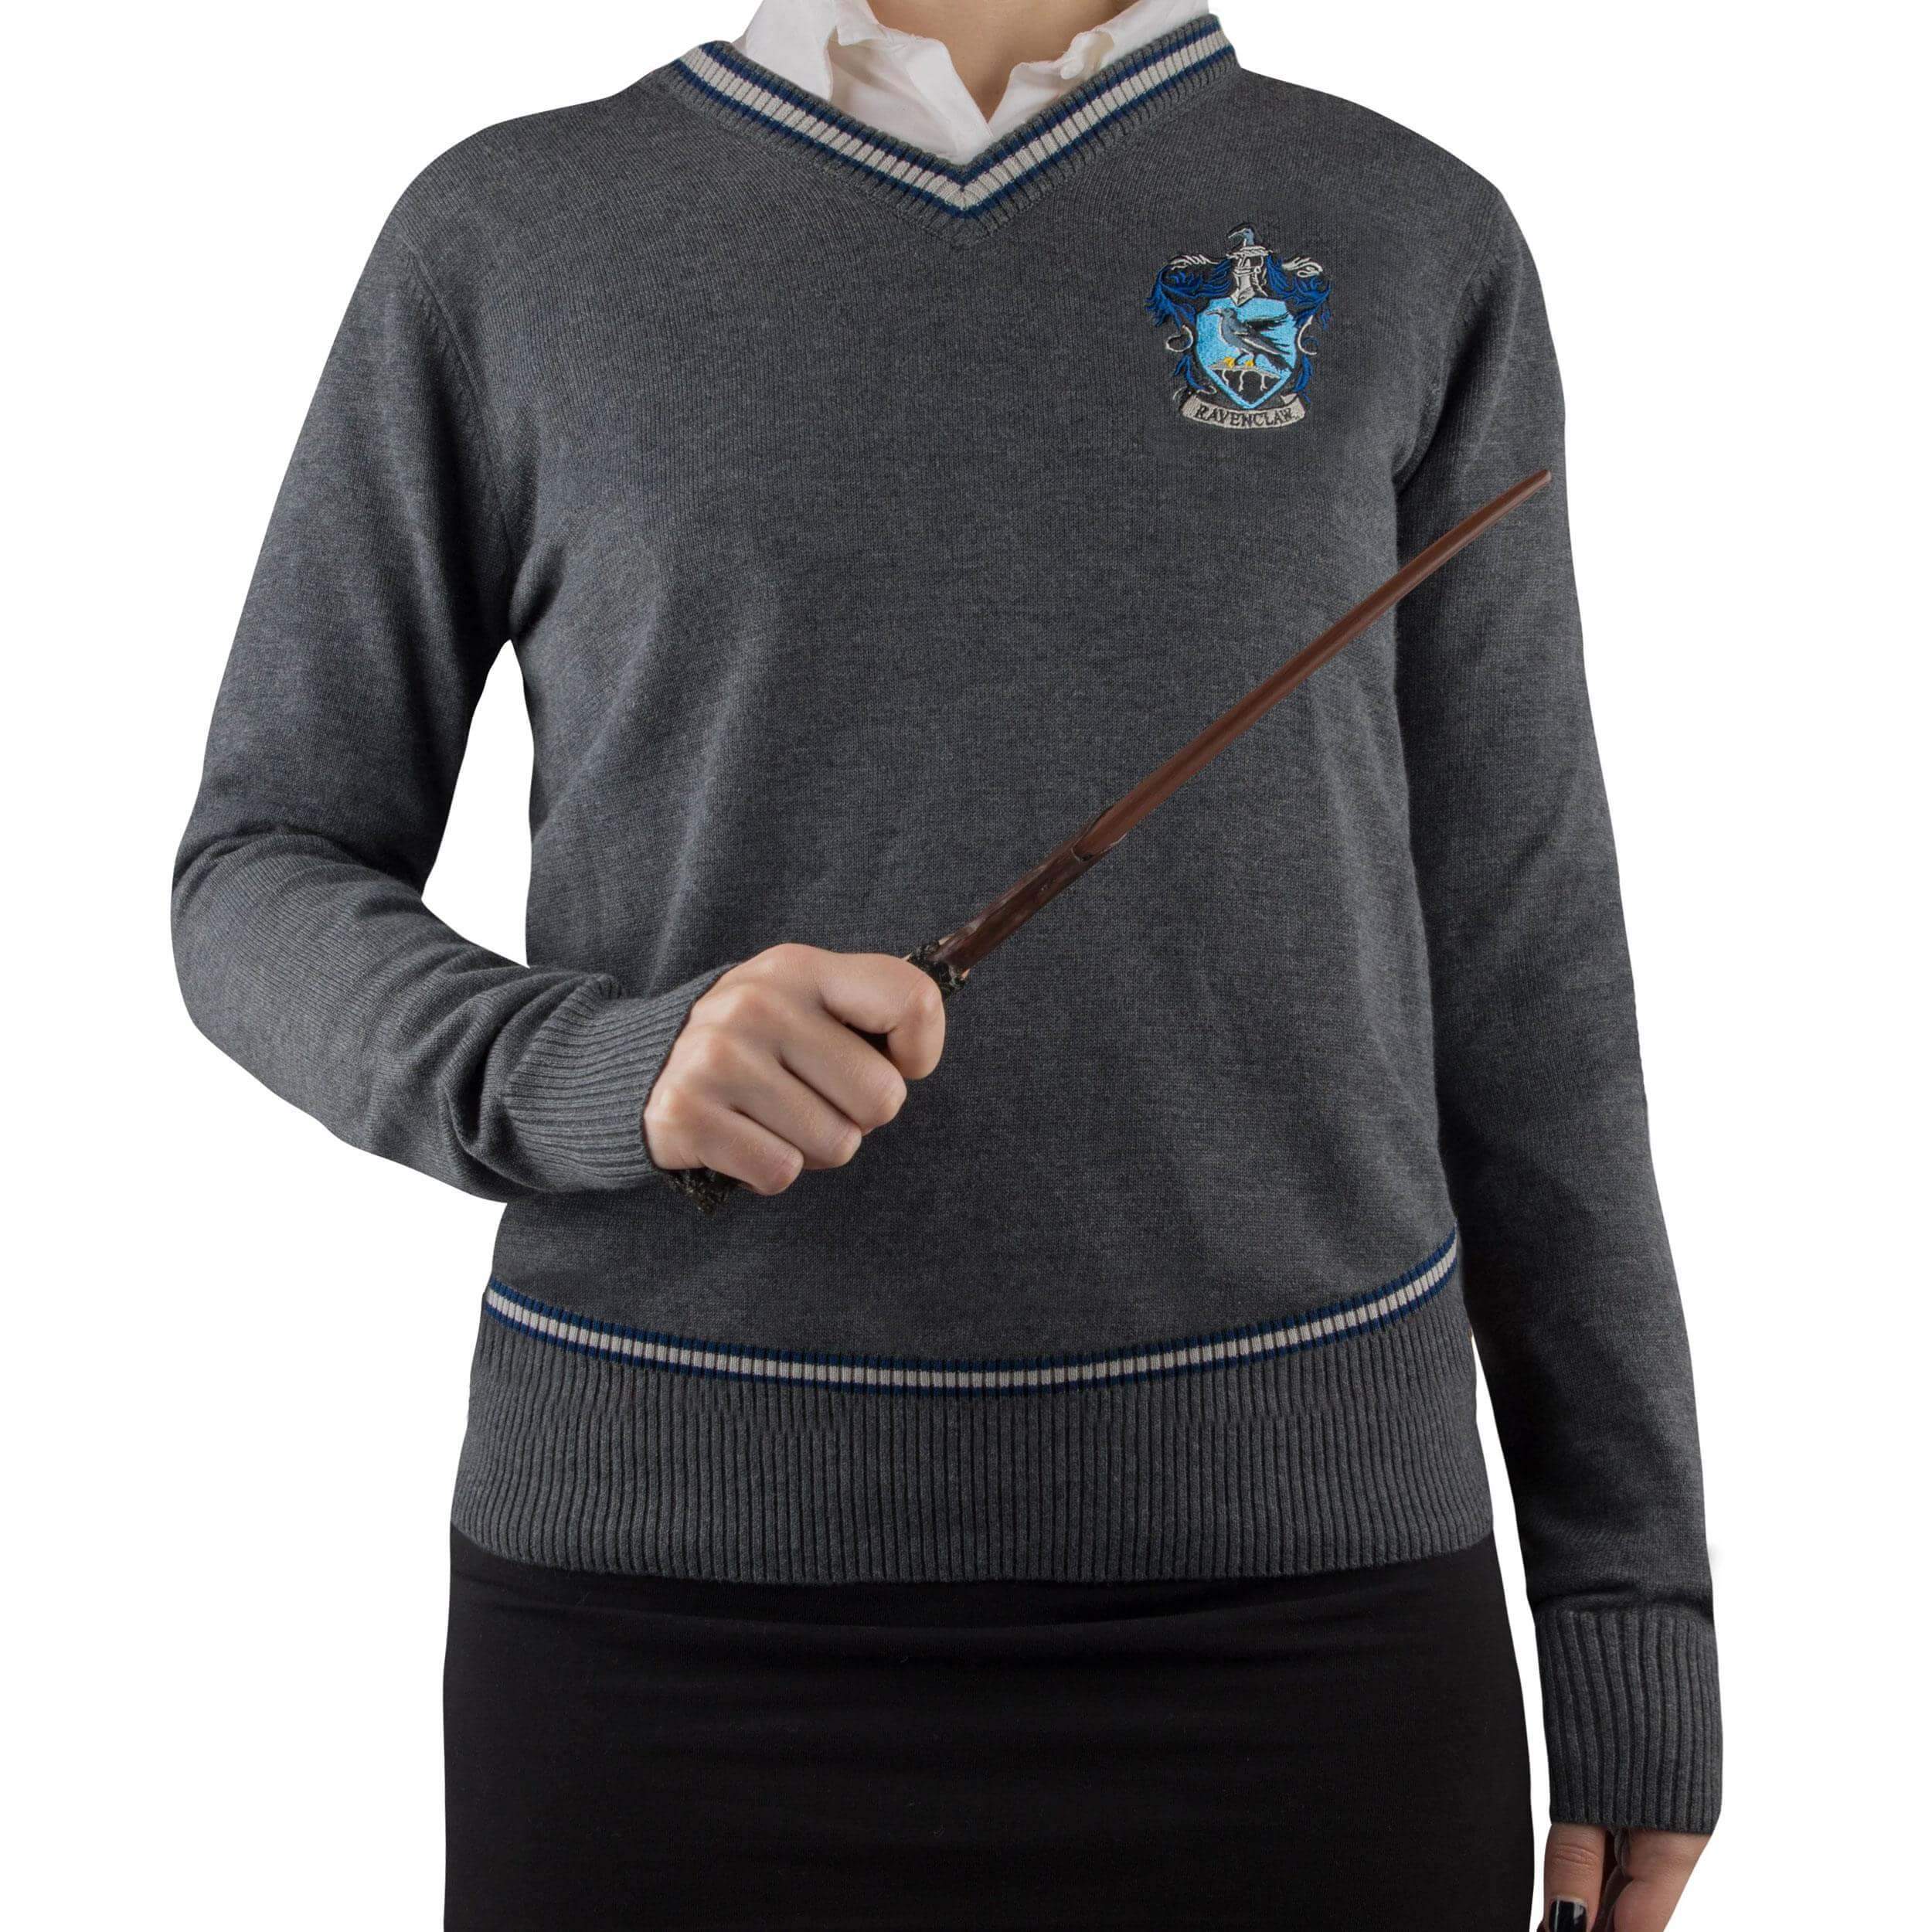 Harry Potter Serdaigle - Quidditch Pull tricoté bleu/gris Bleu